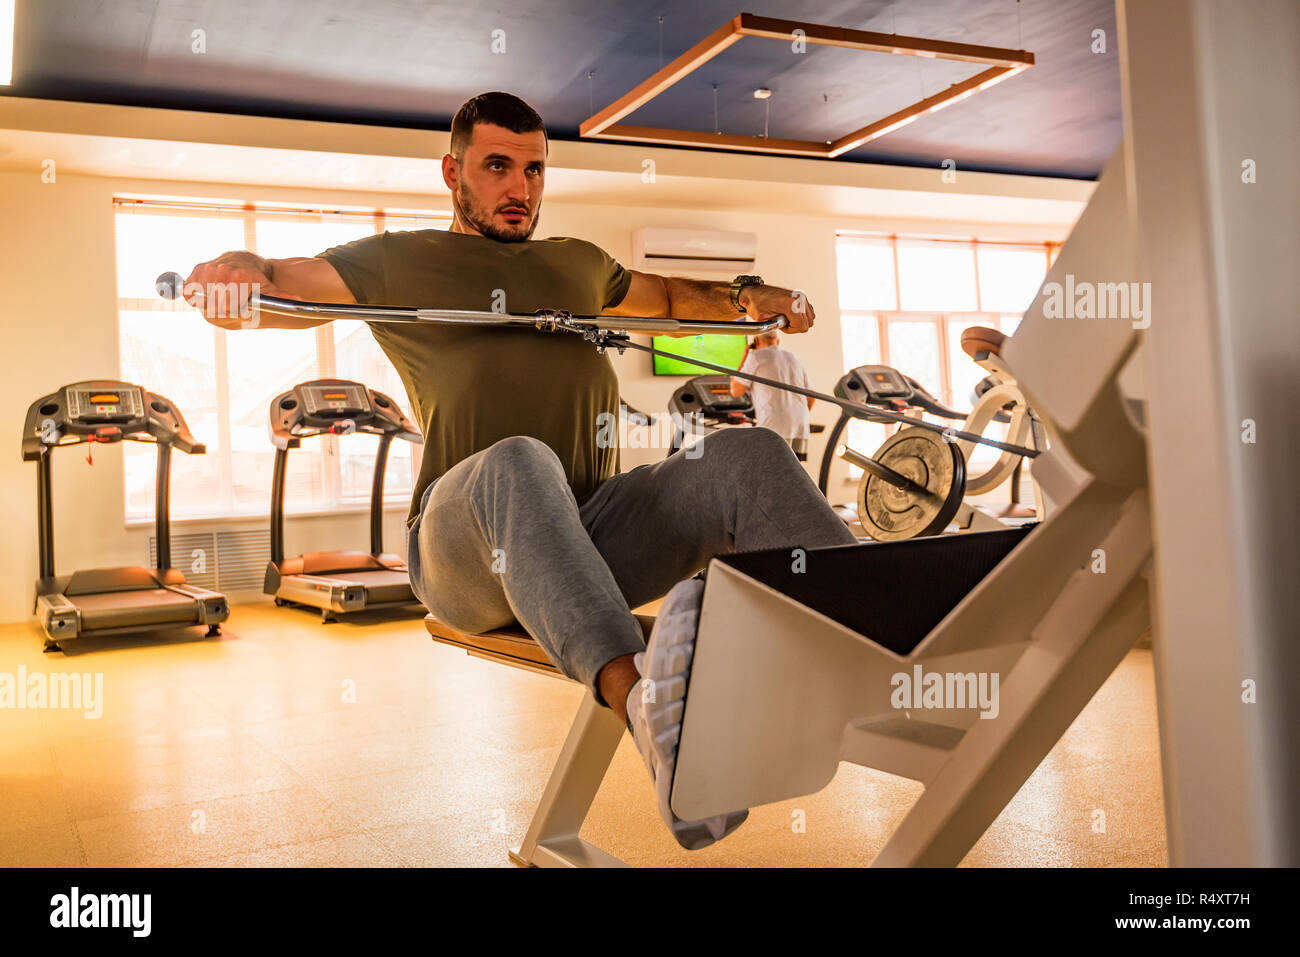 Jeune homme musclé ne partie inférieure de la poitrine exercices avec la machine dans une salle de sport moderne Banque D'Images